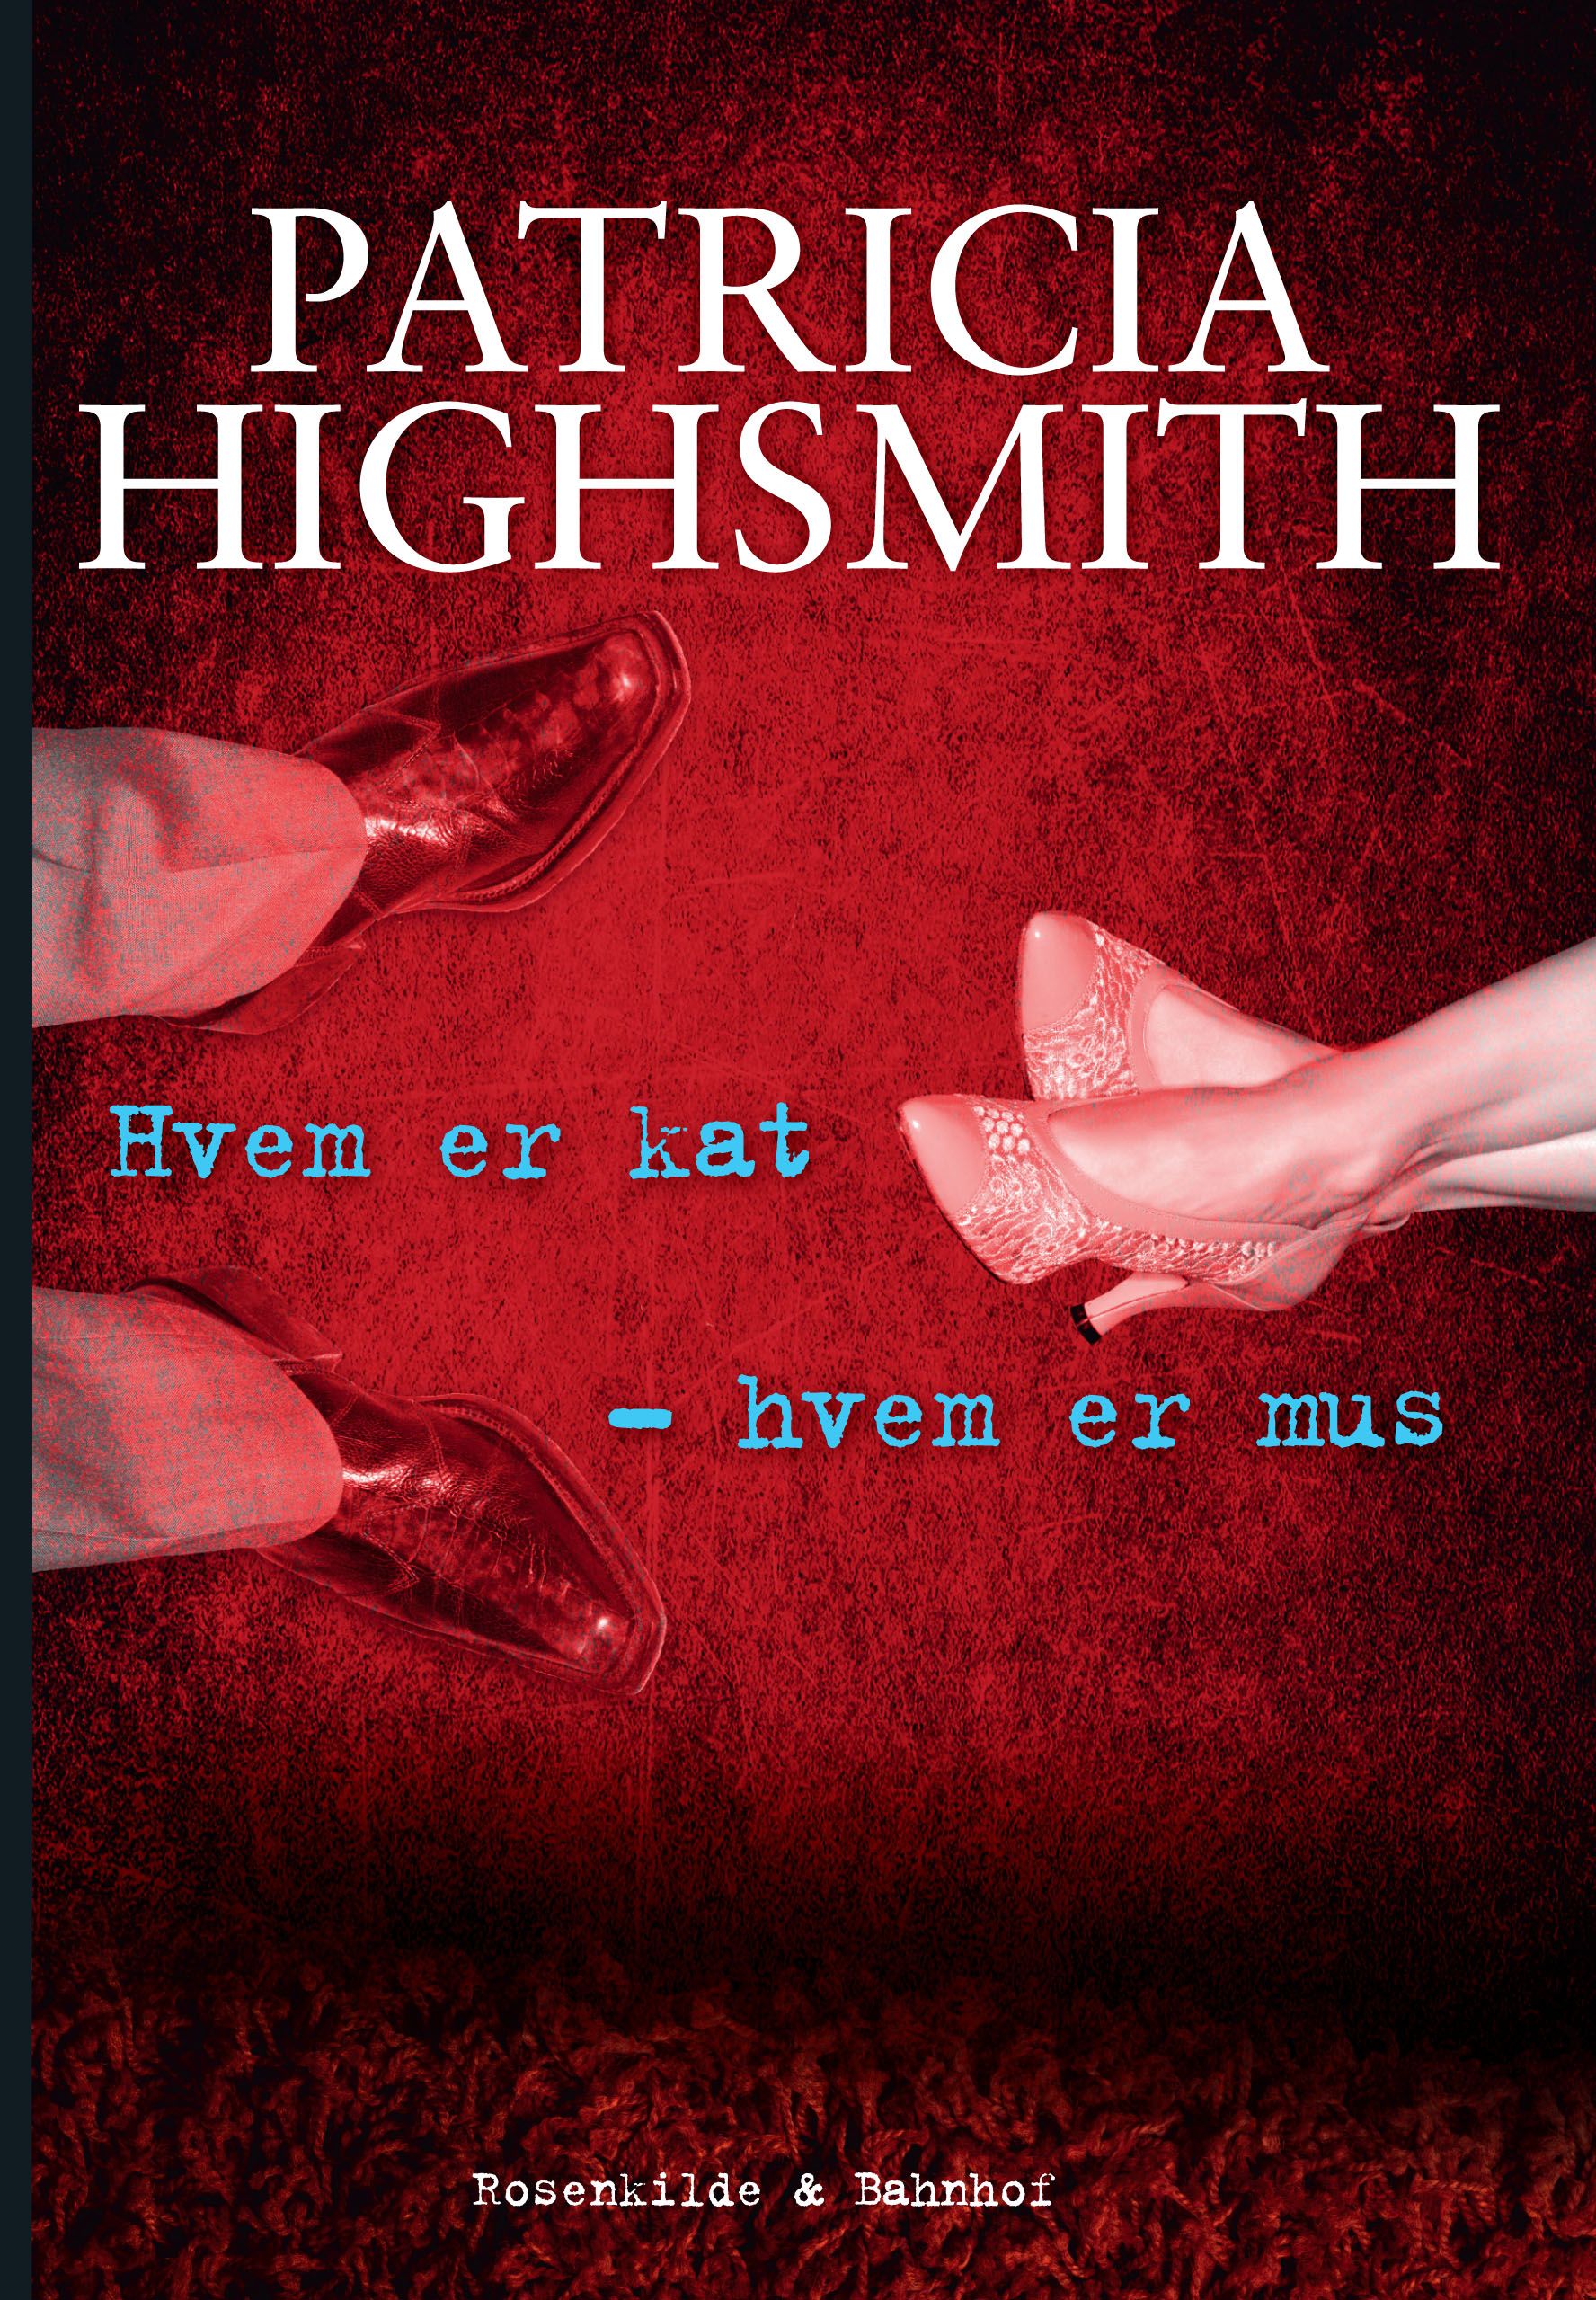 Hvem er kat - hvem er mus. En Patricia Highsmith krimi., eBook by Patricia Highsmith